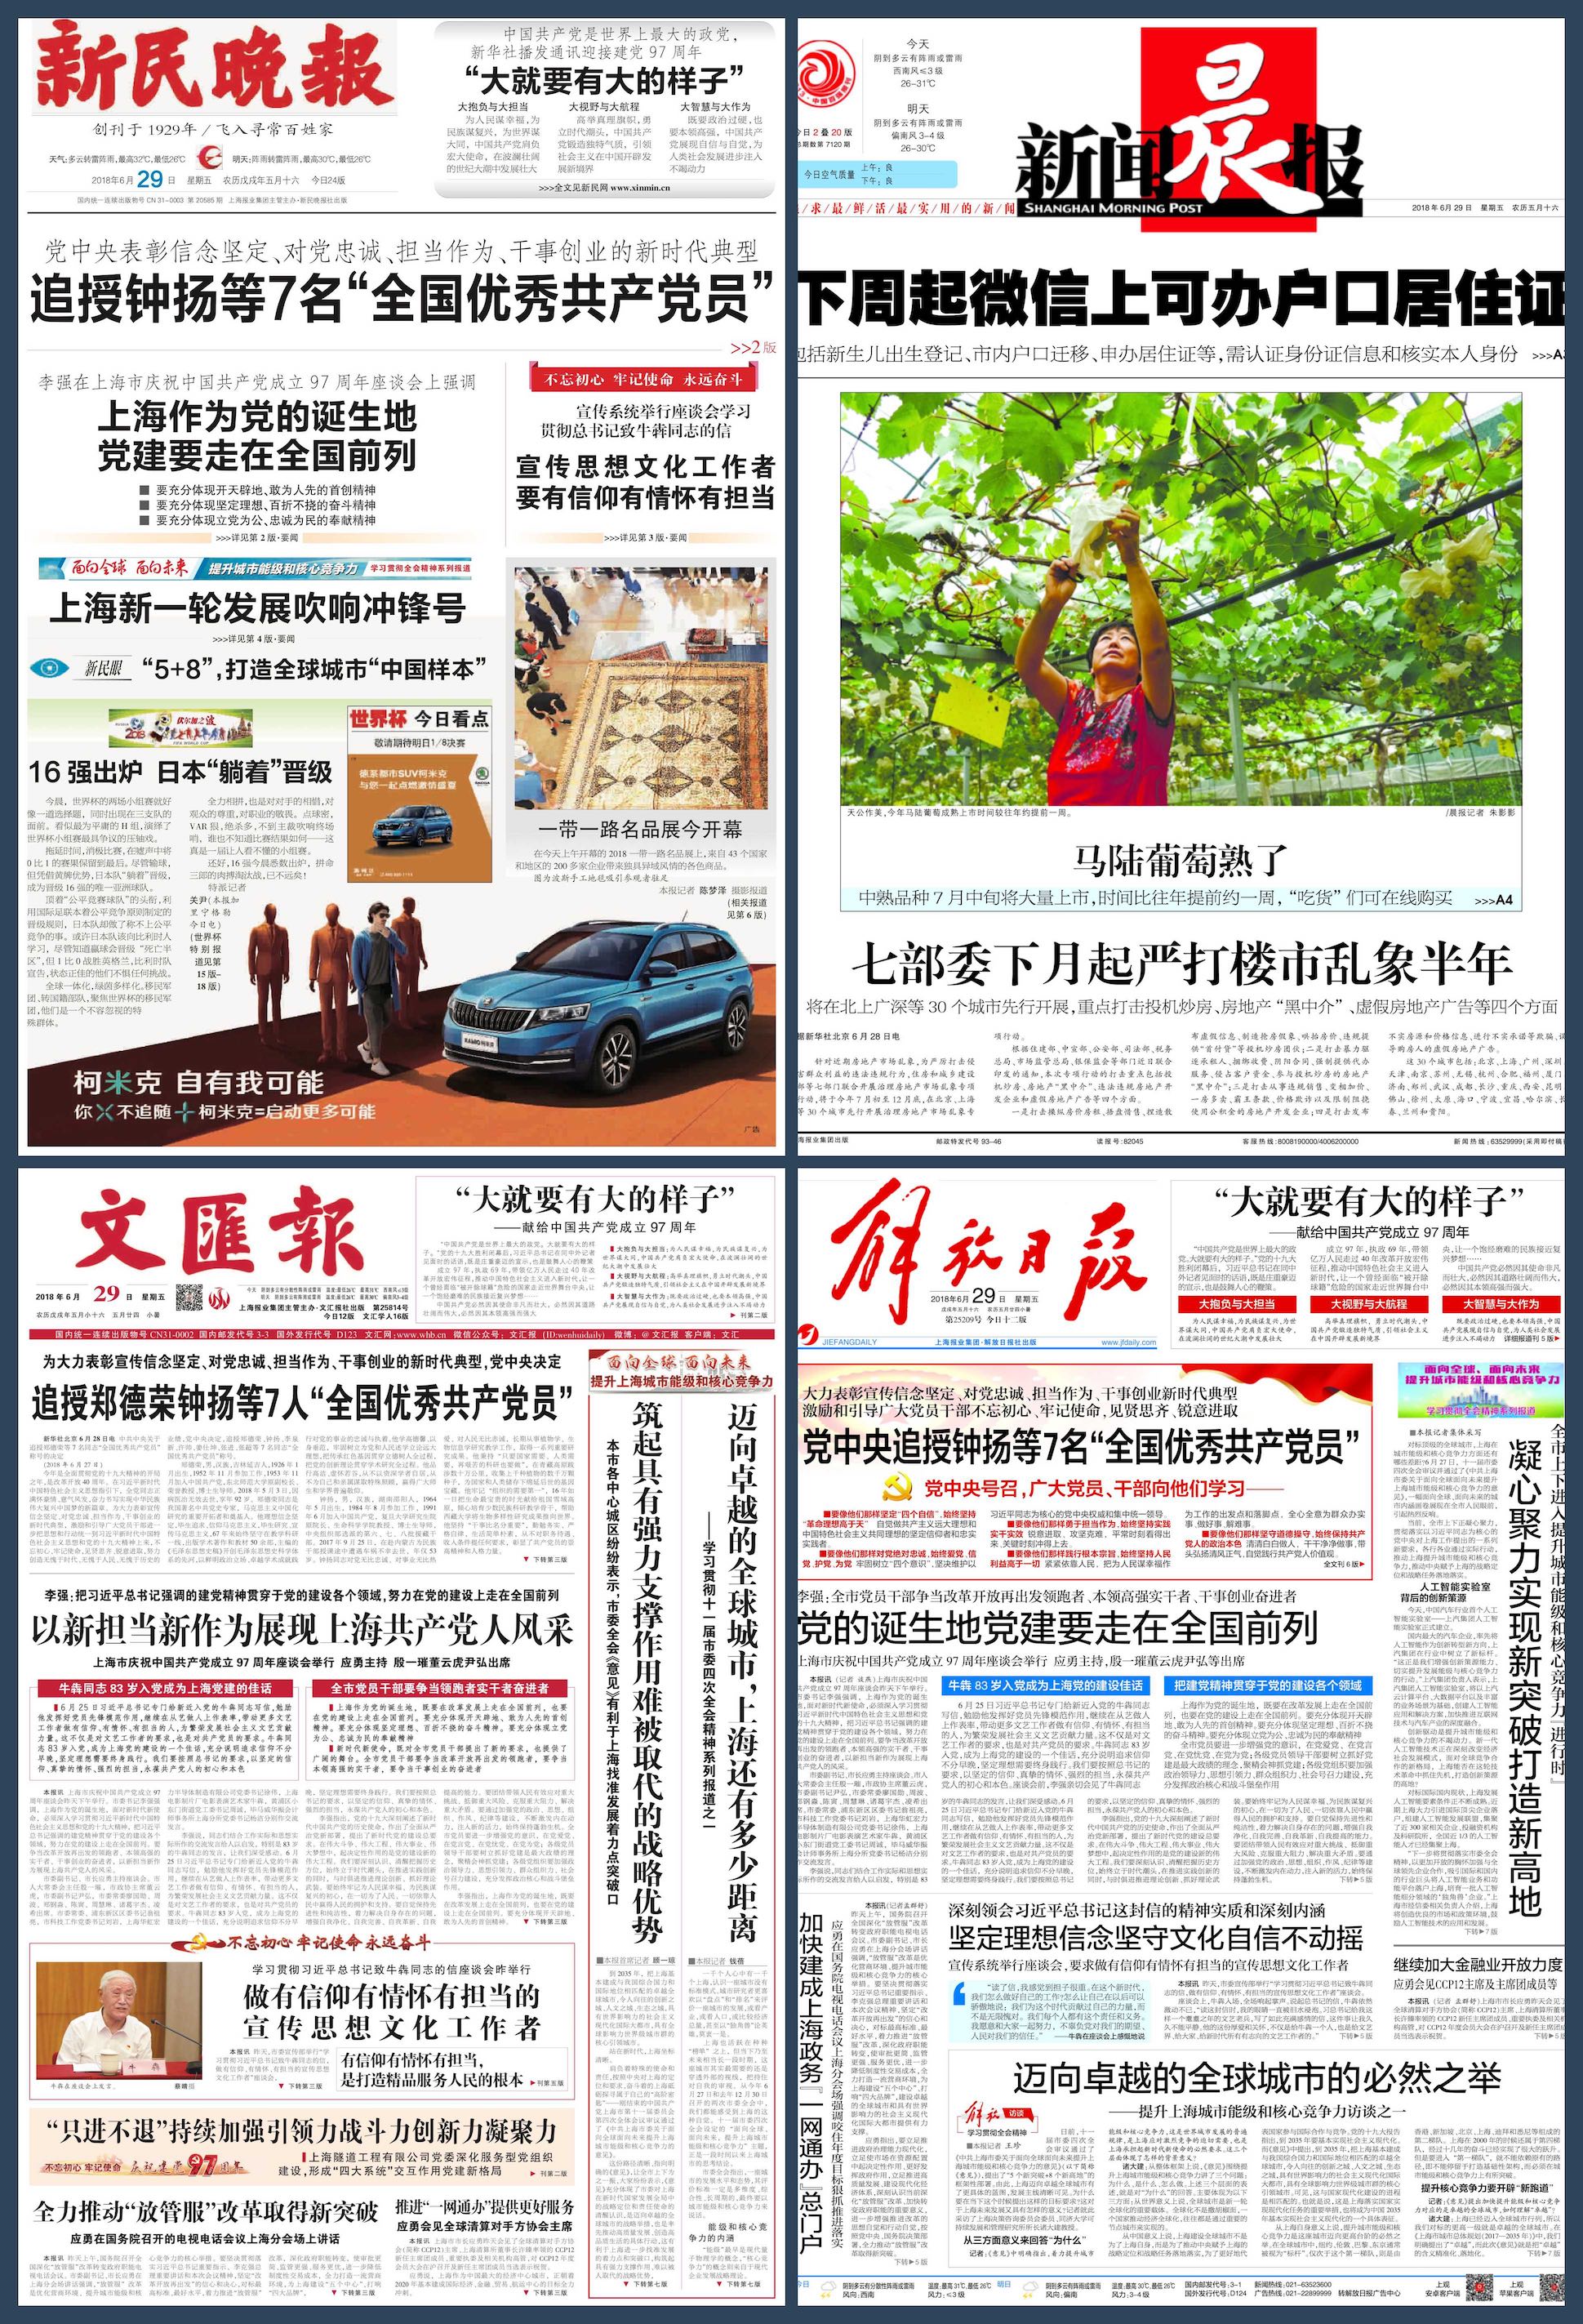 【立此存照】上海小学生被杀案次日：地方报纸只字未提 (更正)